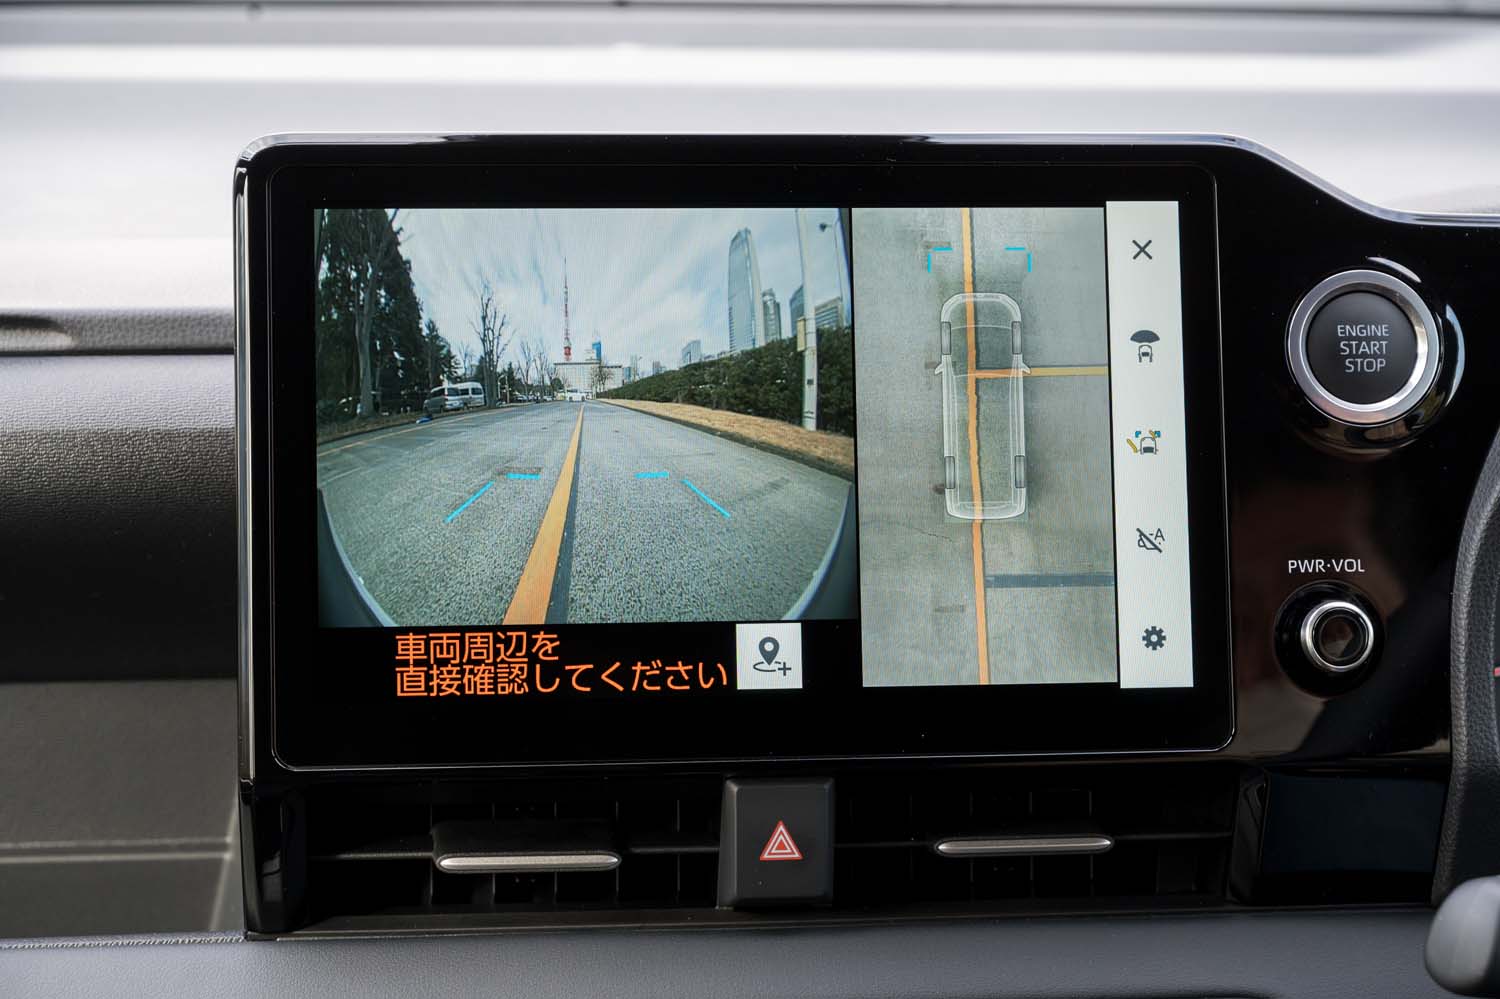 オプションのパノラミックビューモニターは床下表示機能付き。写真右側の映像では車両が透明になって駐車枠が表示されていることが分かる。